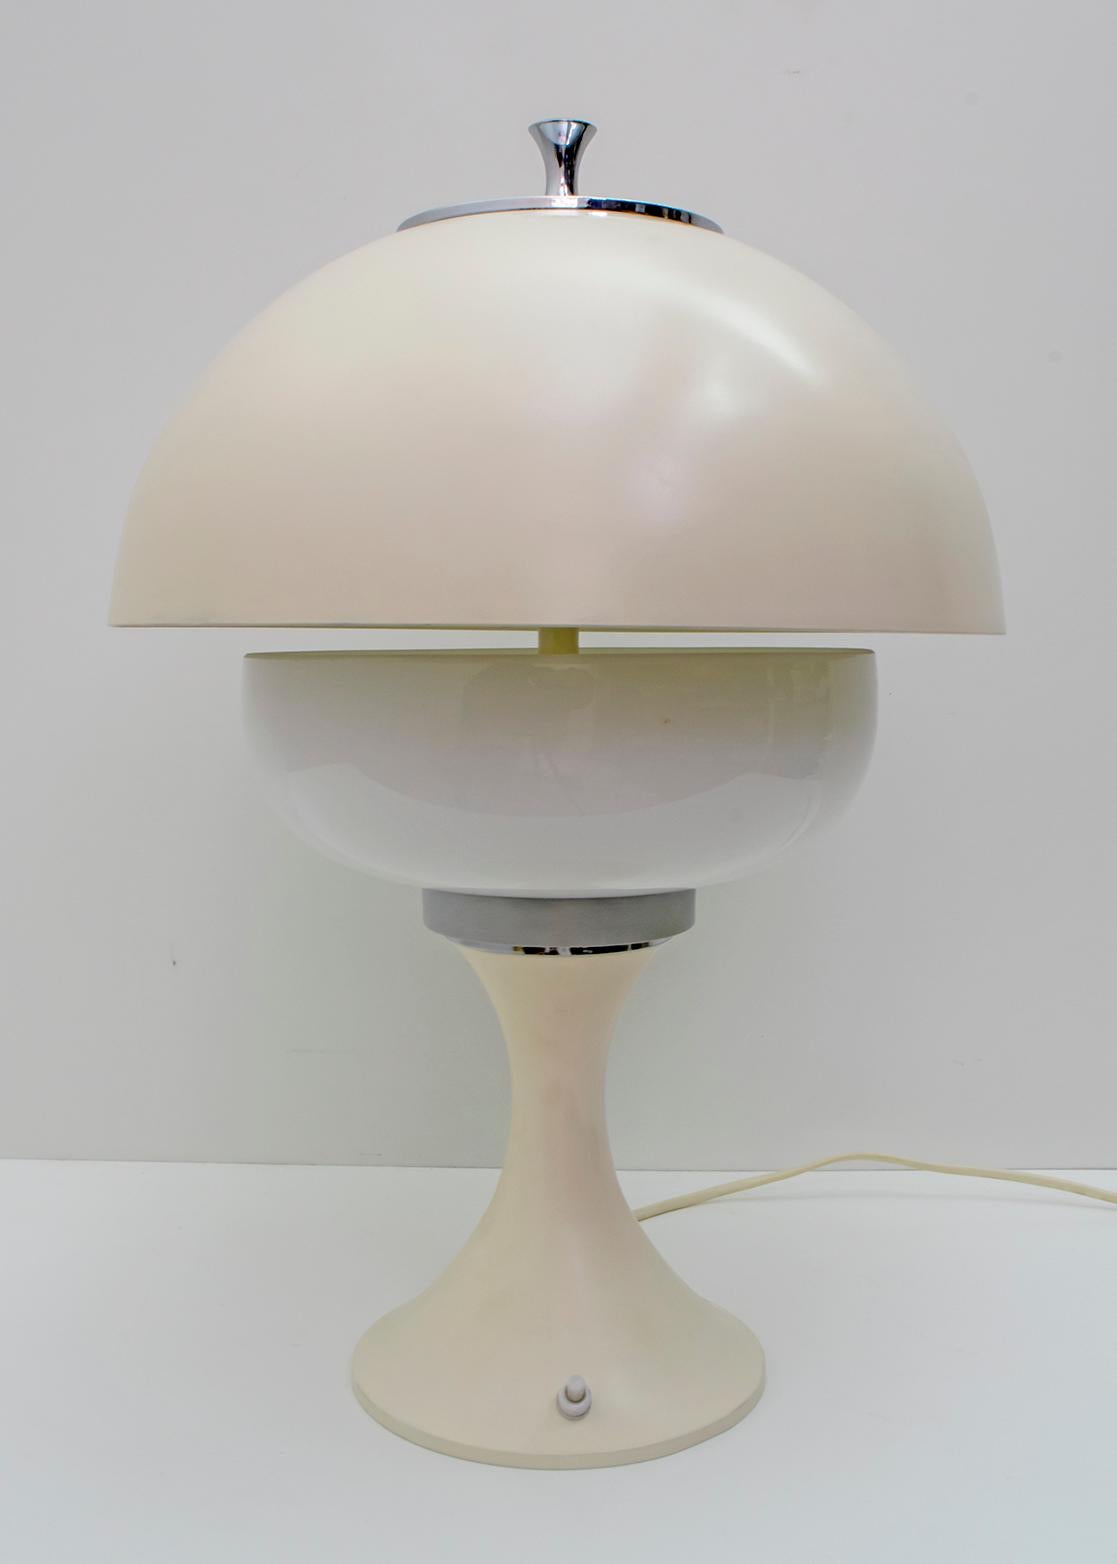 Pair of After Gaetano Sciolari Midcentury Italian Lamps, 1960s For Sale 3